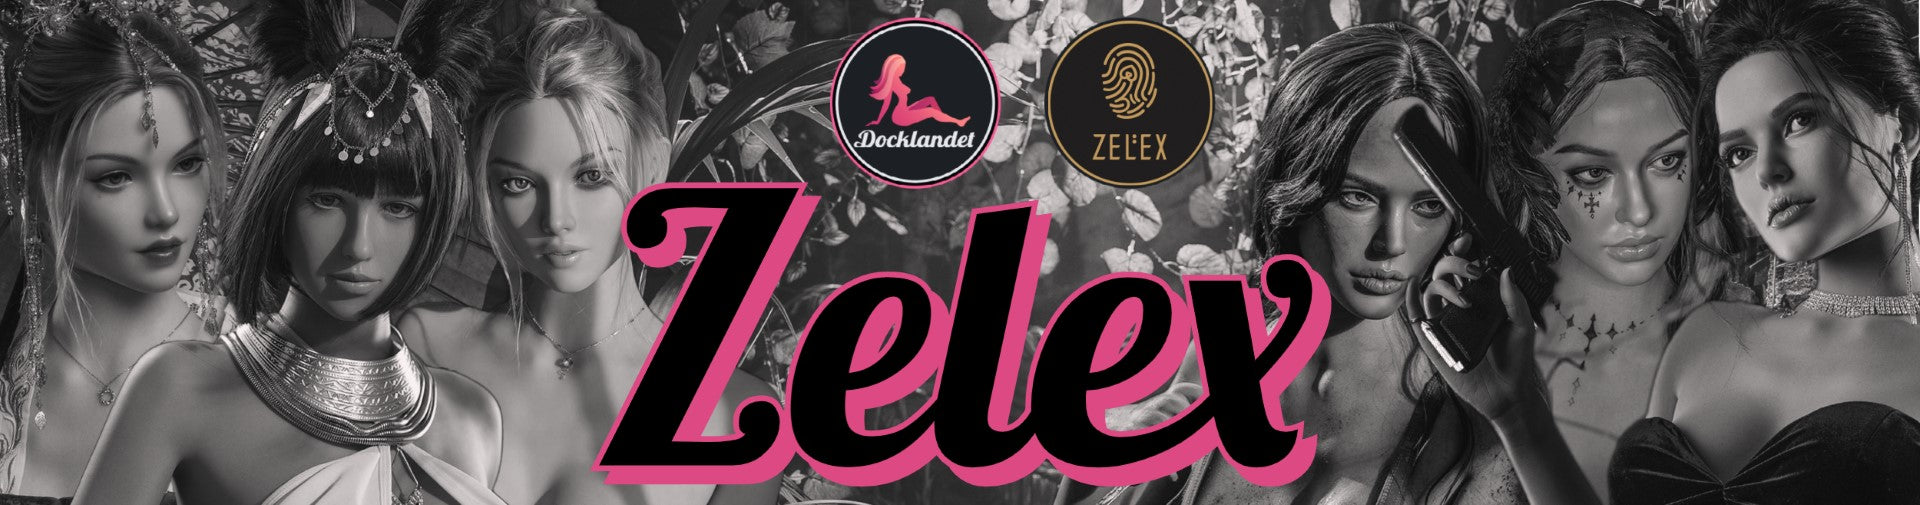 Zelex topp 10 bästa sexdockor. De populäraste silikondockorna från Zelex hittar du hos Docklandet! 